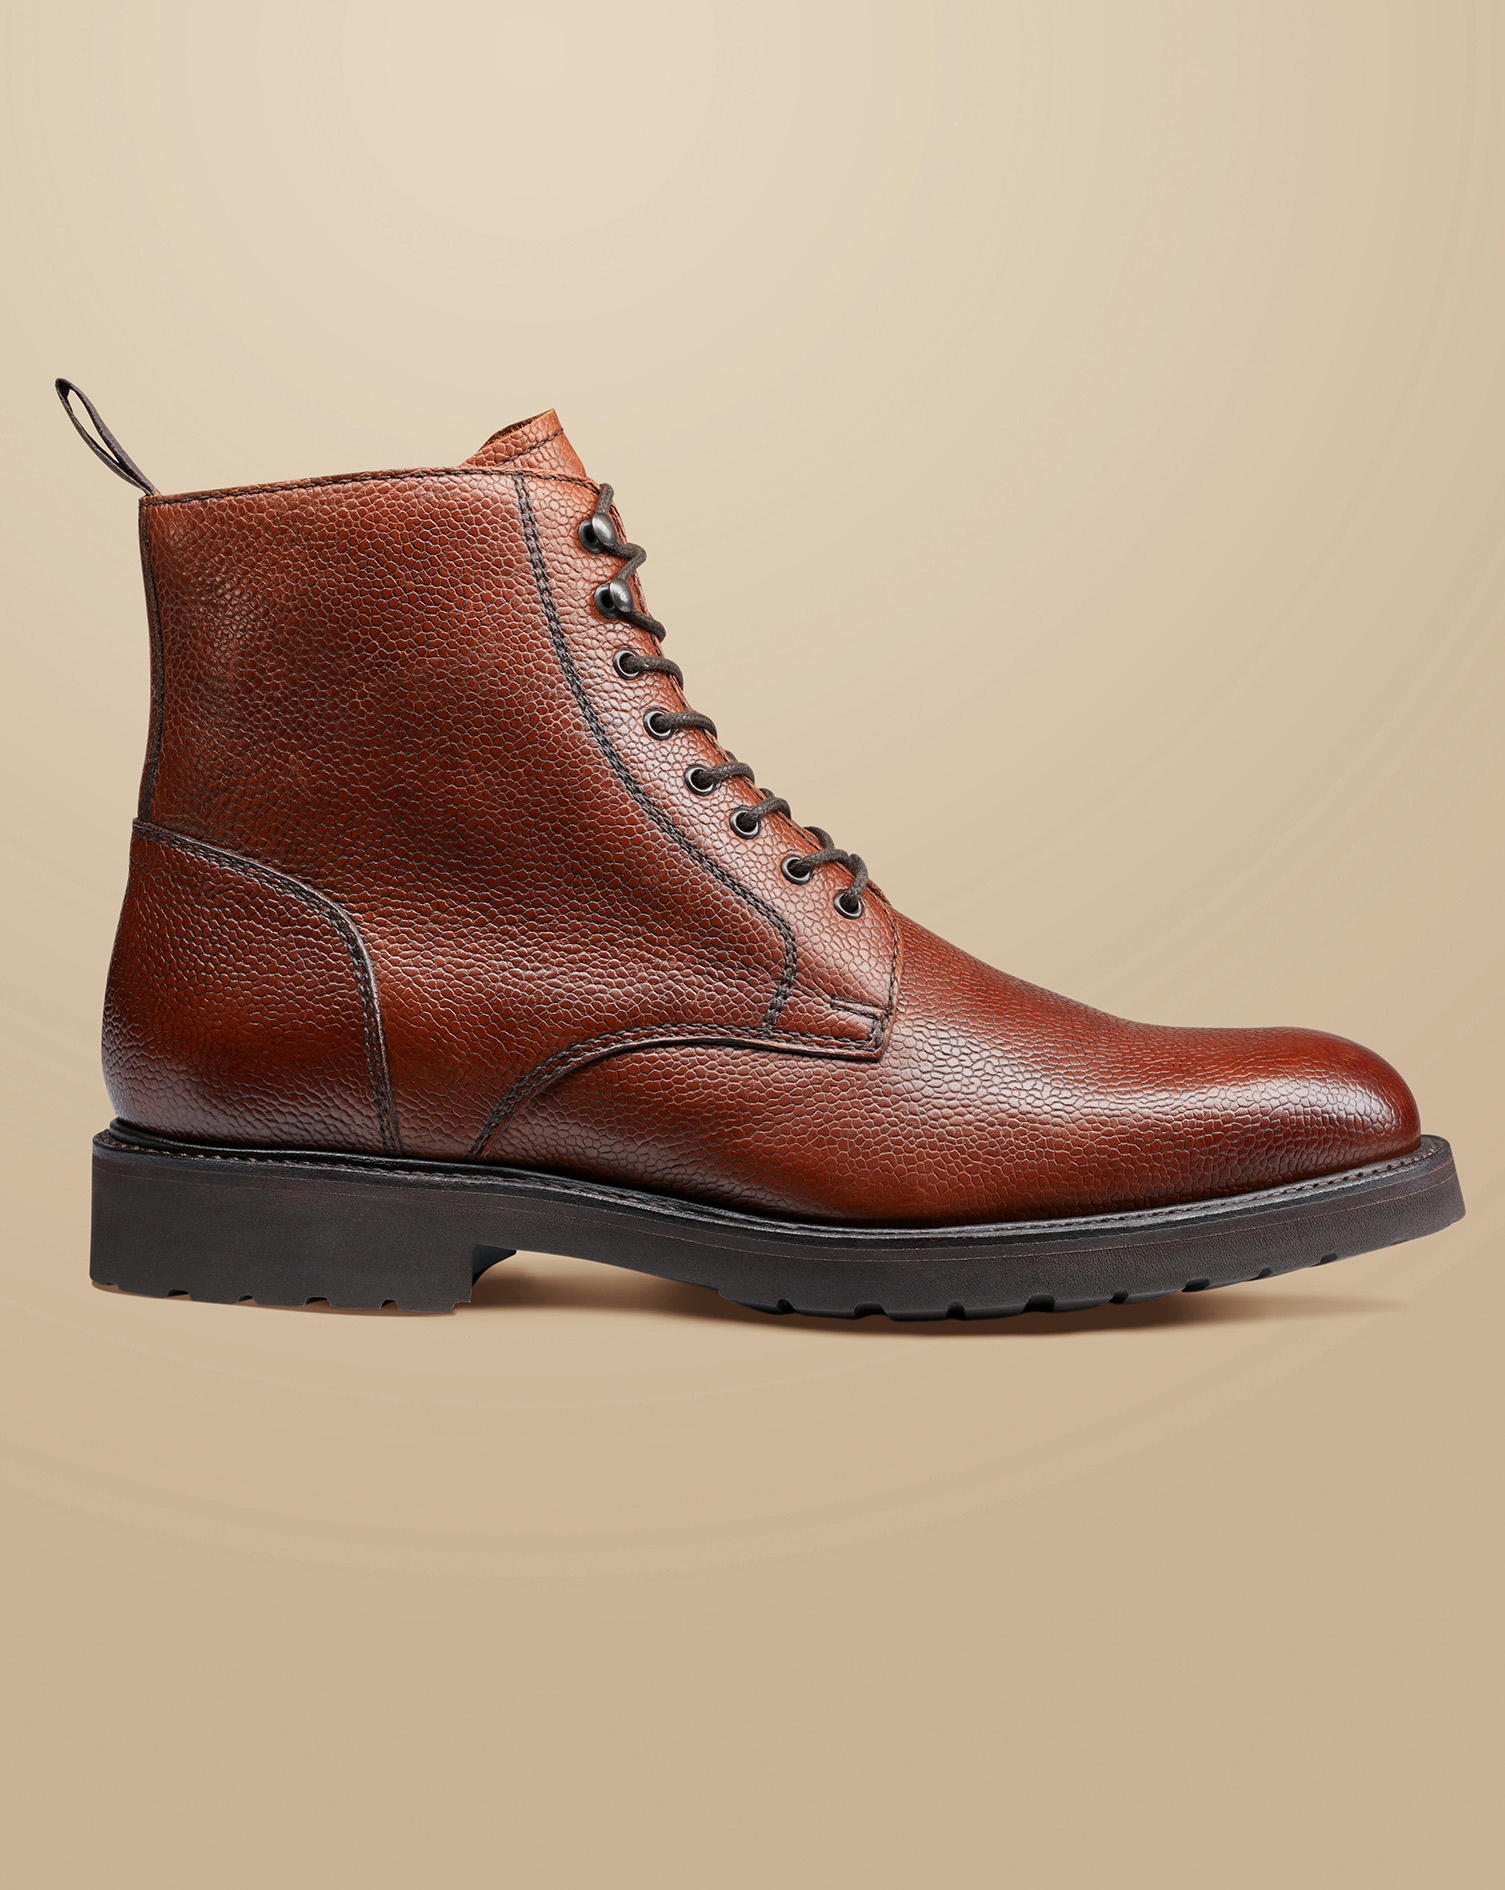 Men's Charles Tyrwhitt Grain Leather Boots - Chestnut Brown Size 12
